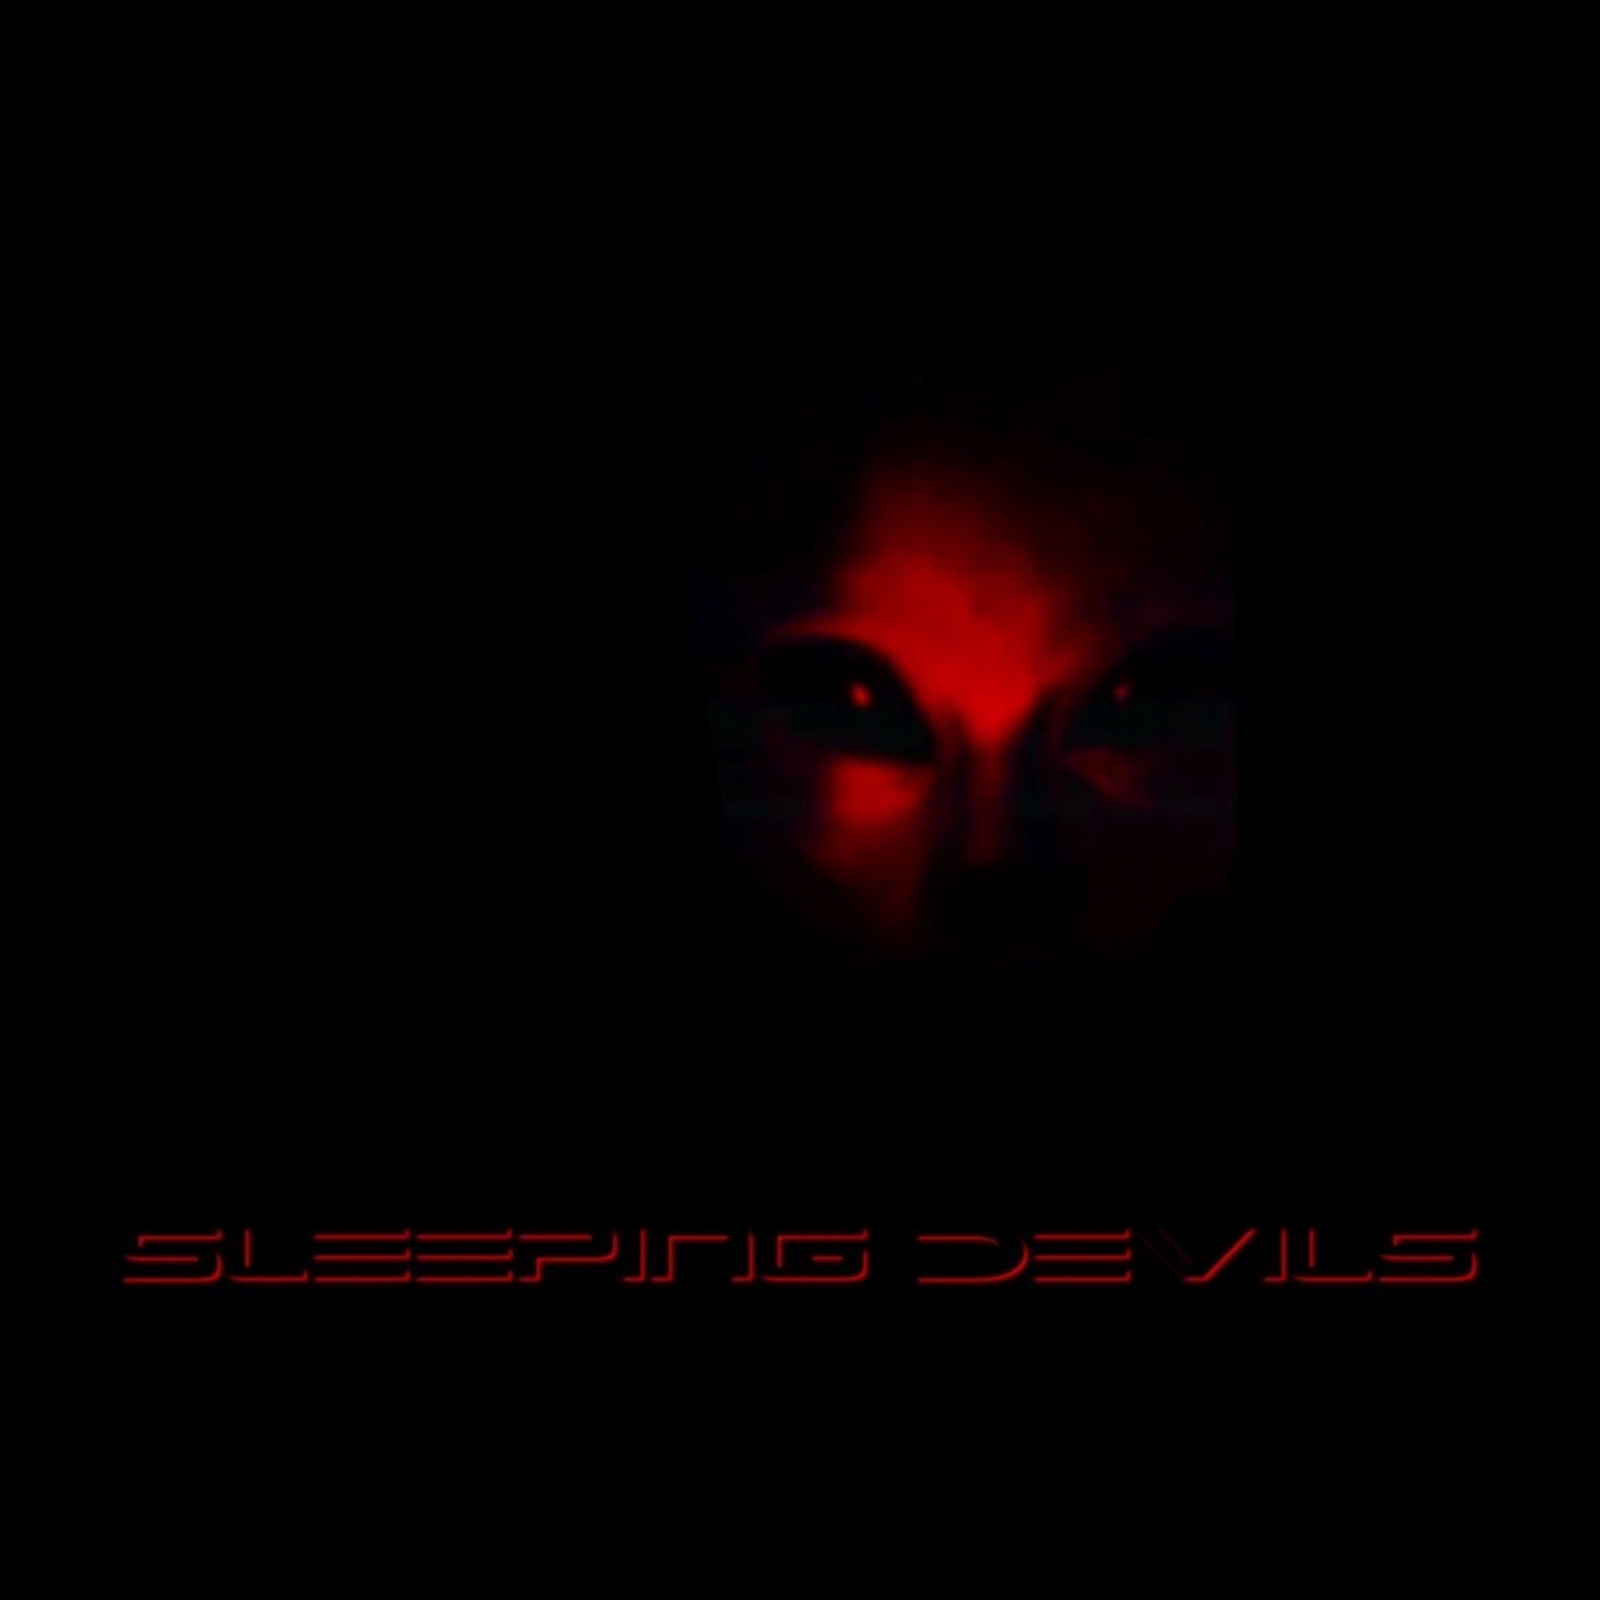 Sleeping Devils